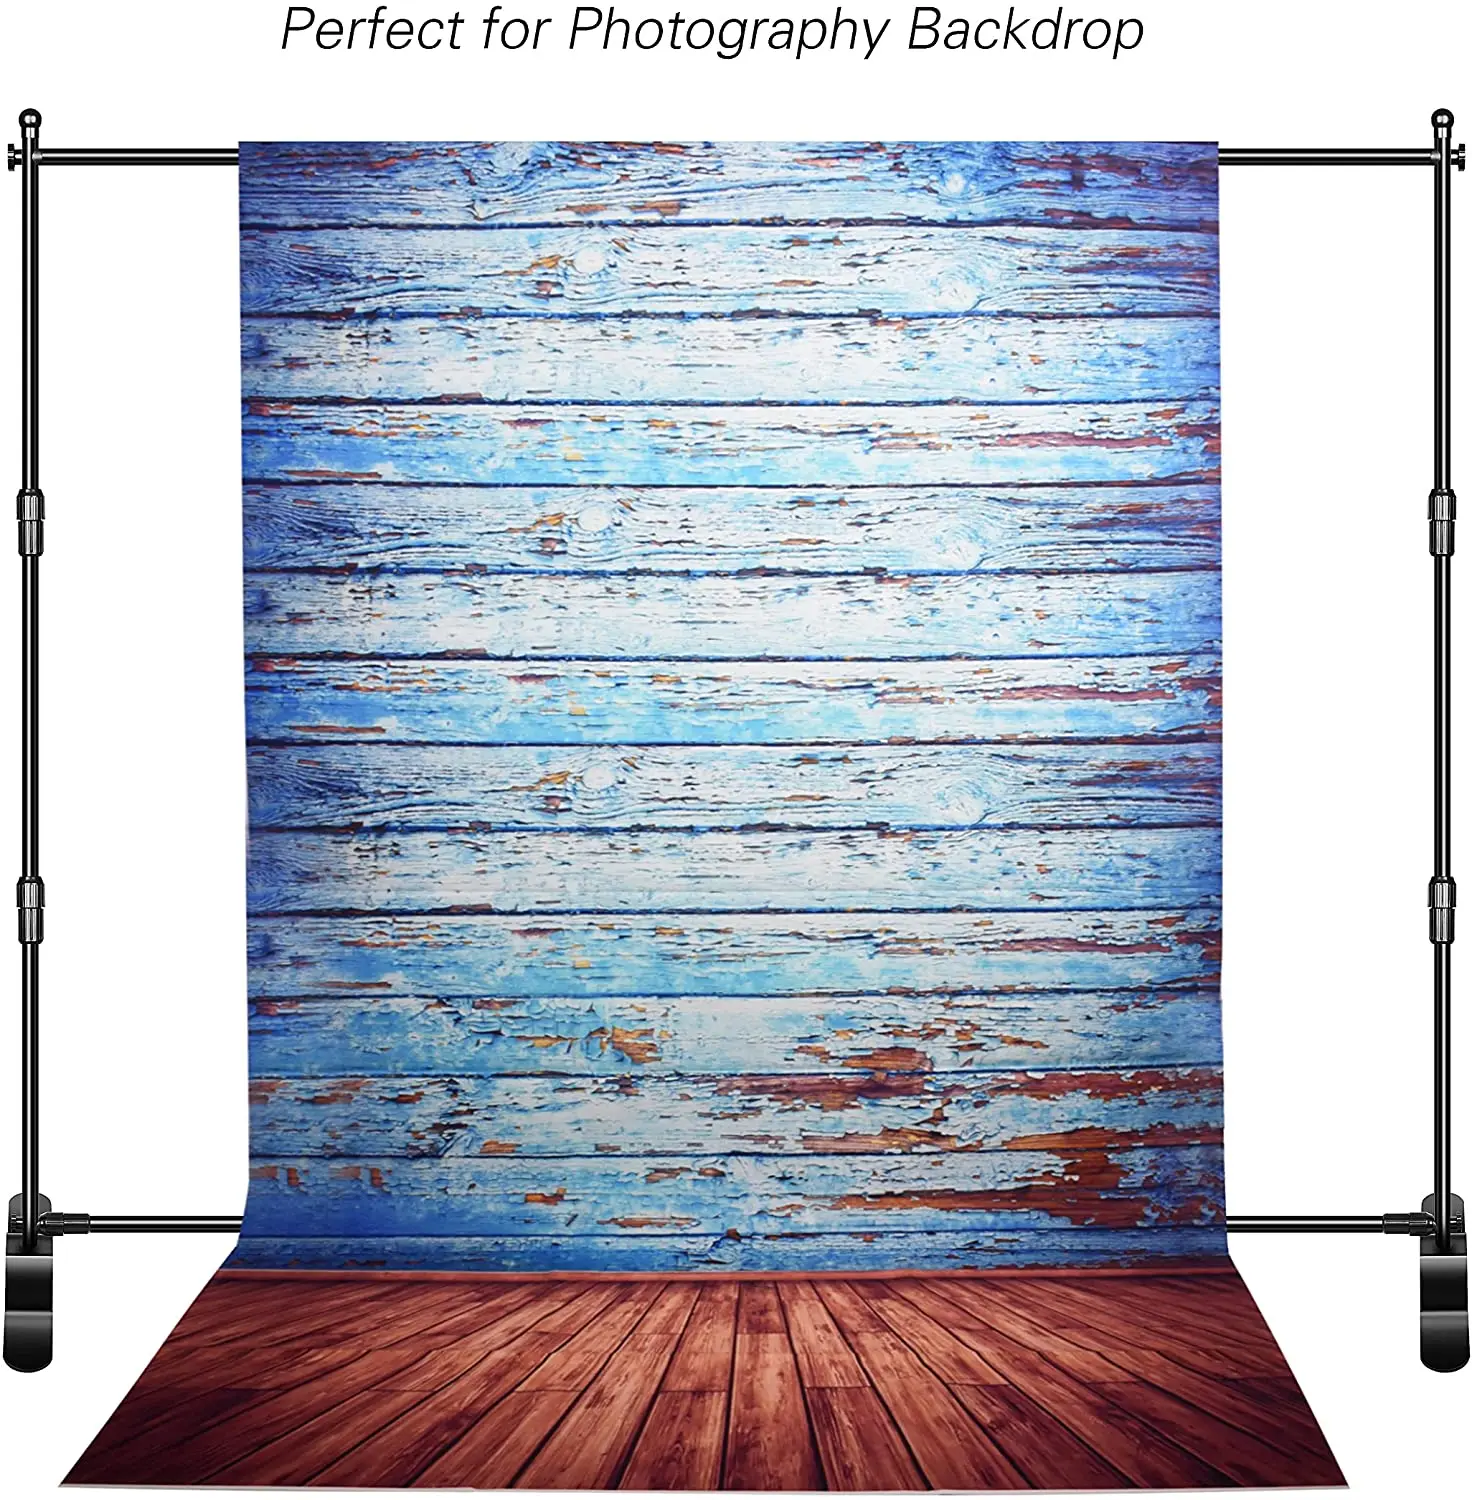 8x10 футов сверхмощный фон баннер стенд толще Профессиональный Большой Телескопический Дисплей шаг и повторение стенд для фотографии